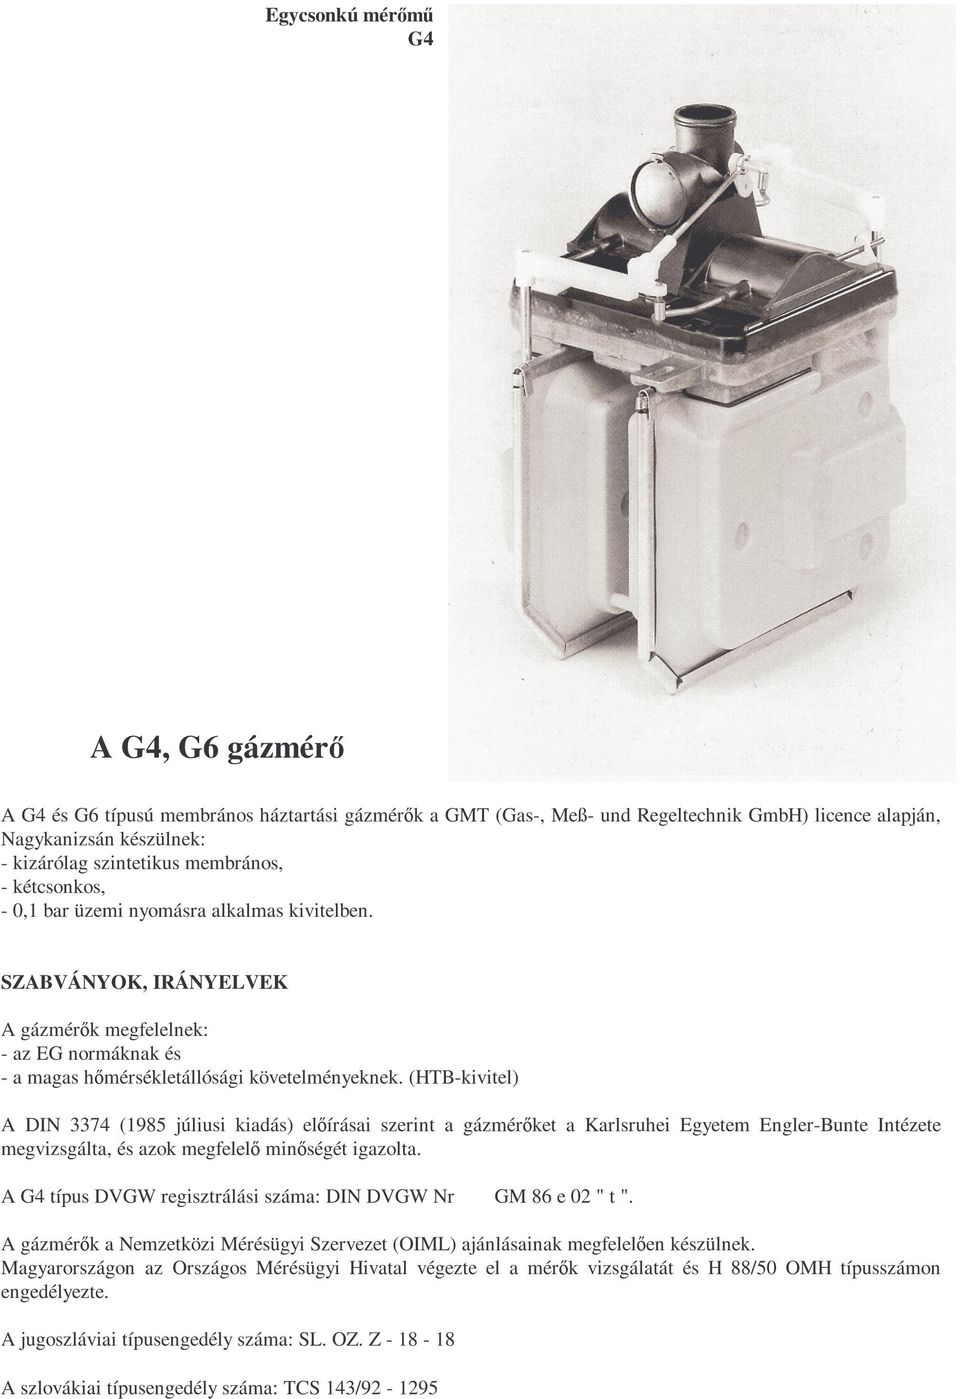 (HTB-kivitel) A DIN 3374 (1985 júliusi kiadás) elıírásai szerint a gázmérıket a Karlsruhei Egyetem Engler-Bunte Intézete megvizsgálta, és azok megfelelı minıségét igazolta.